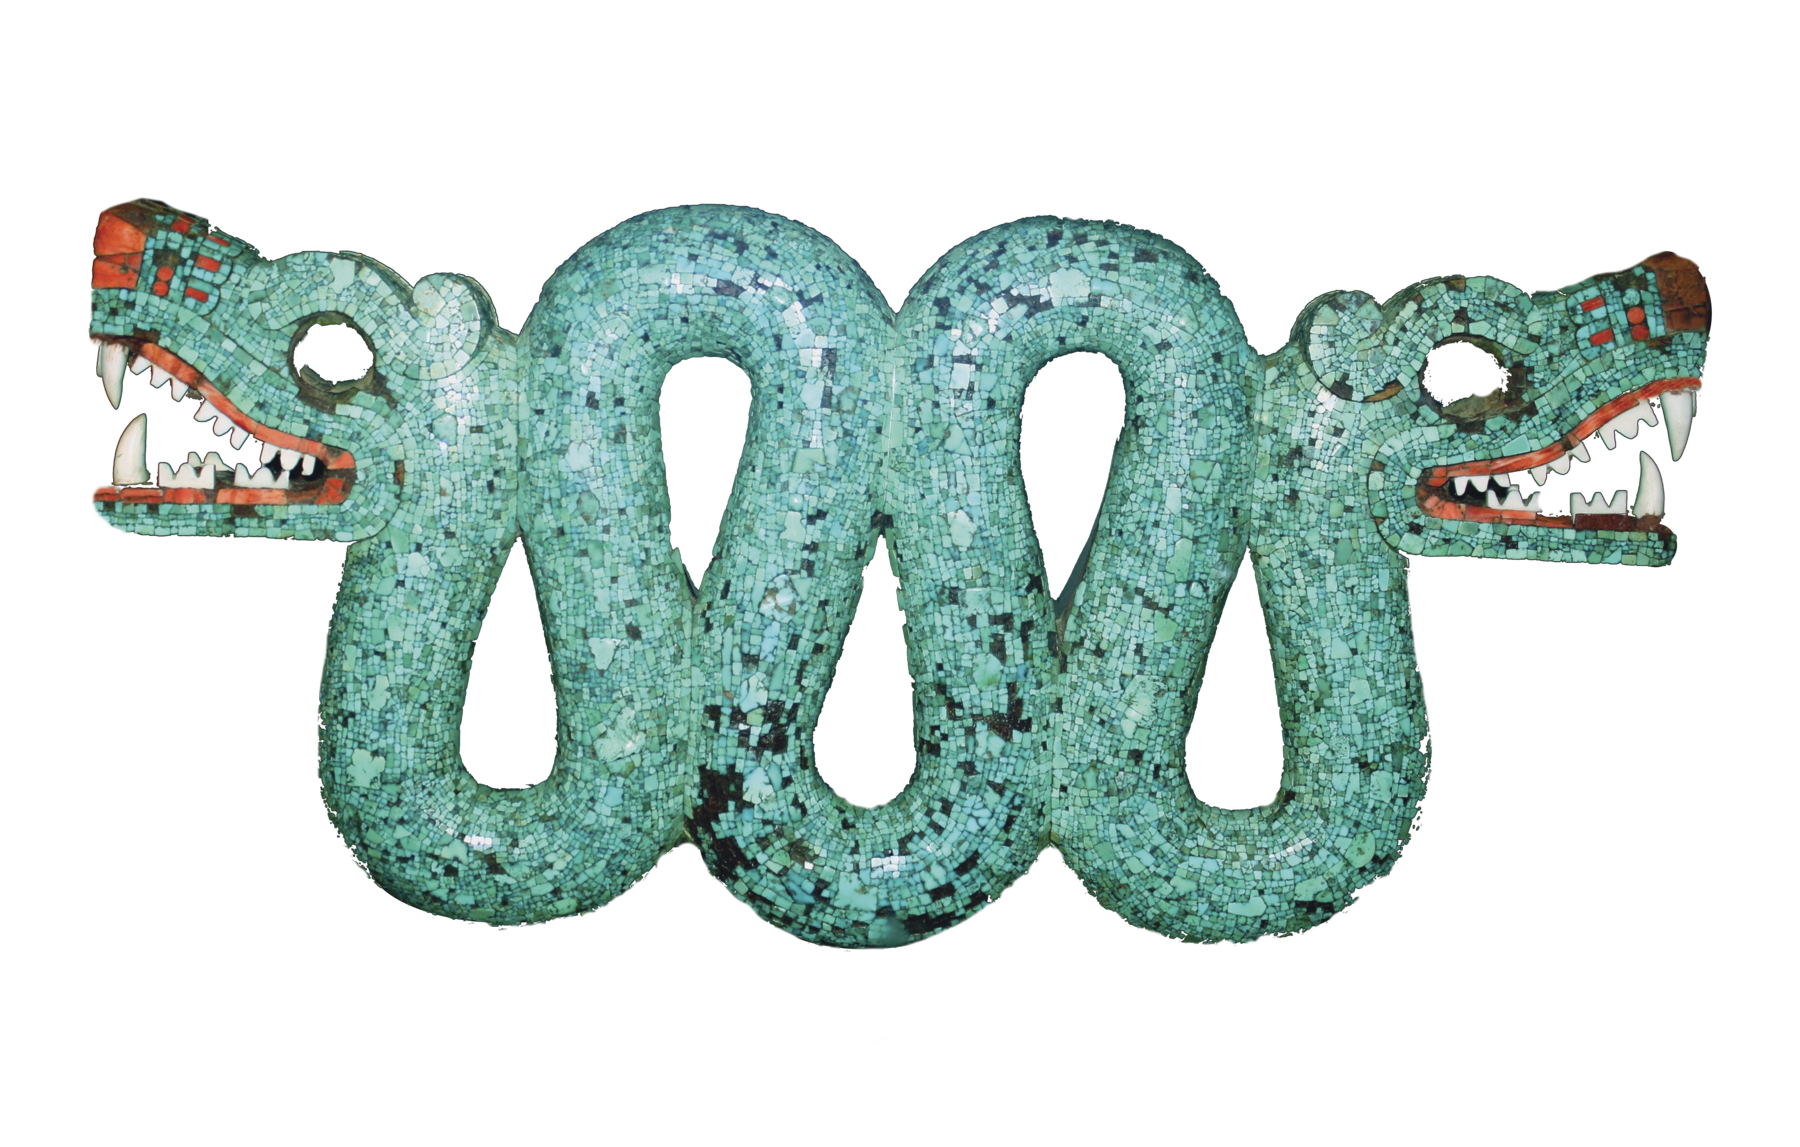 Estátua. Serpente com duas cabeças, uma em cada extremidade do corpo, feita com pedras azuis. Cada uma das cabeças possui focinho e boca vermelhos e grandes dentes brancos.